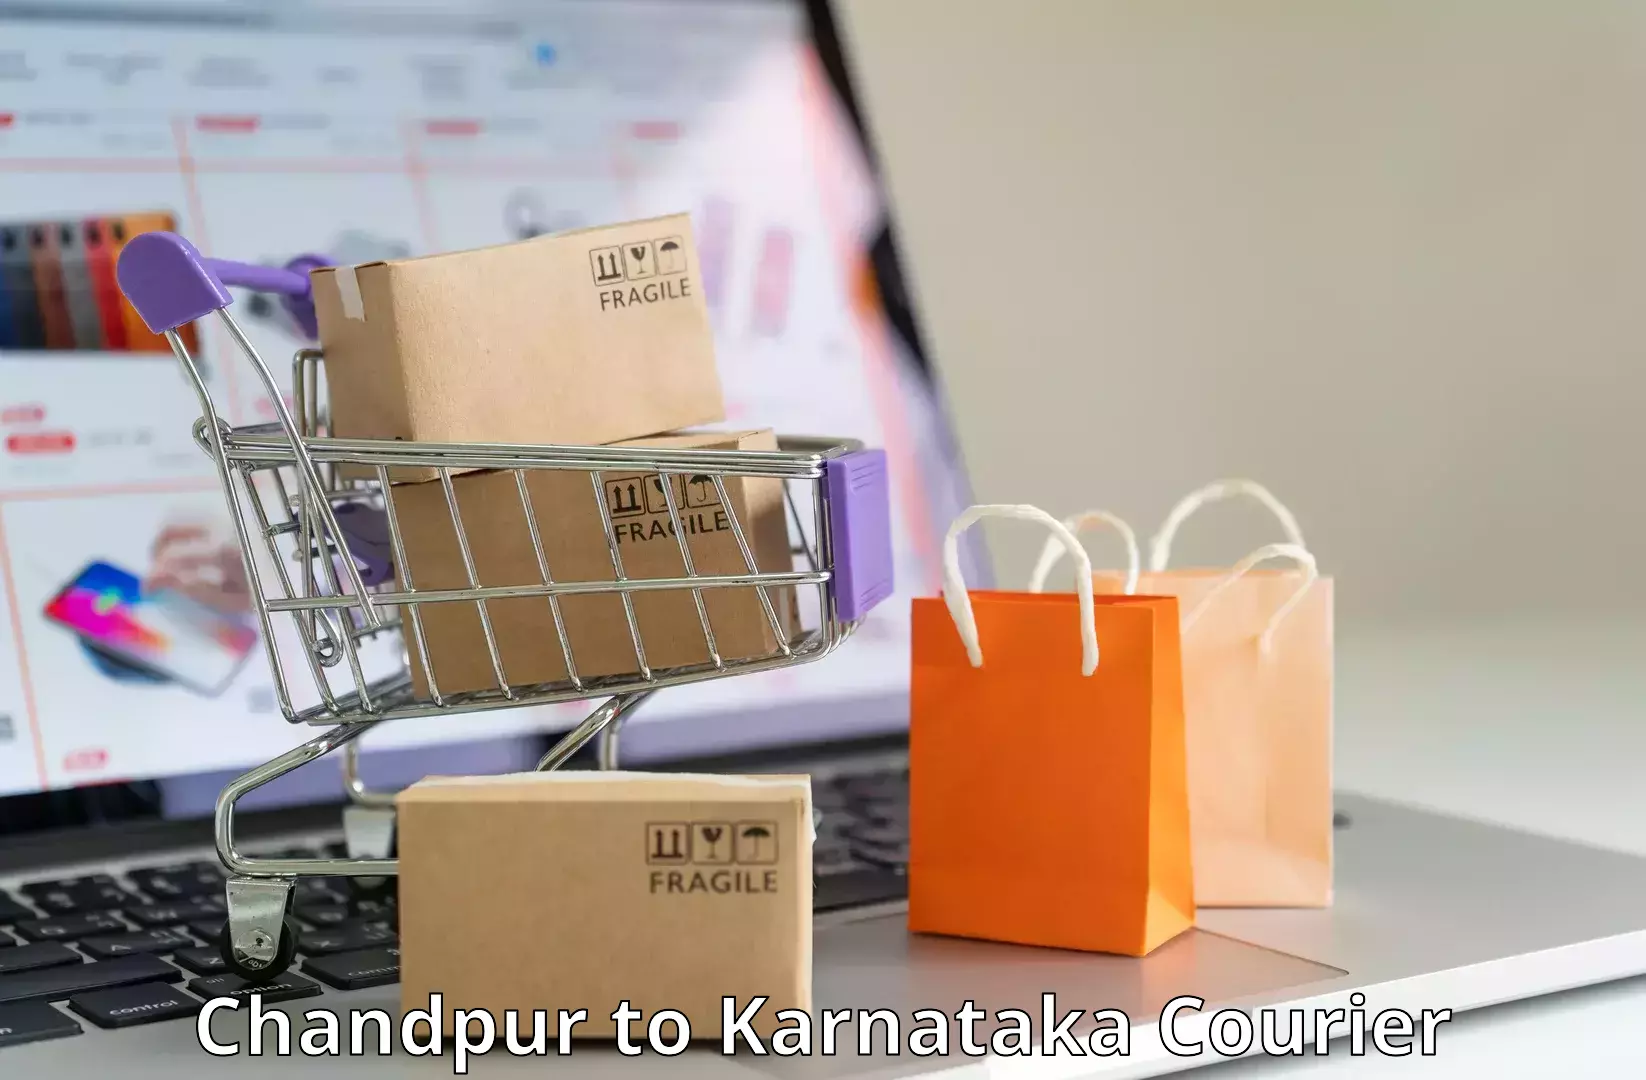 Supply chain efficiency Chandpur to Gundlupete